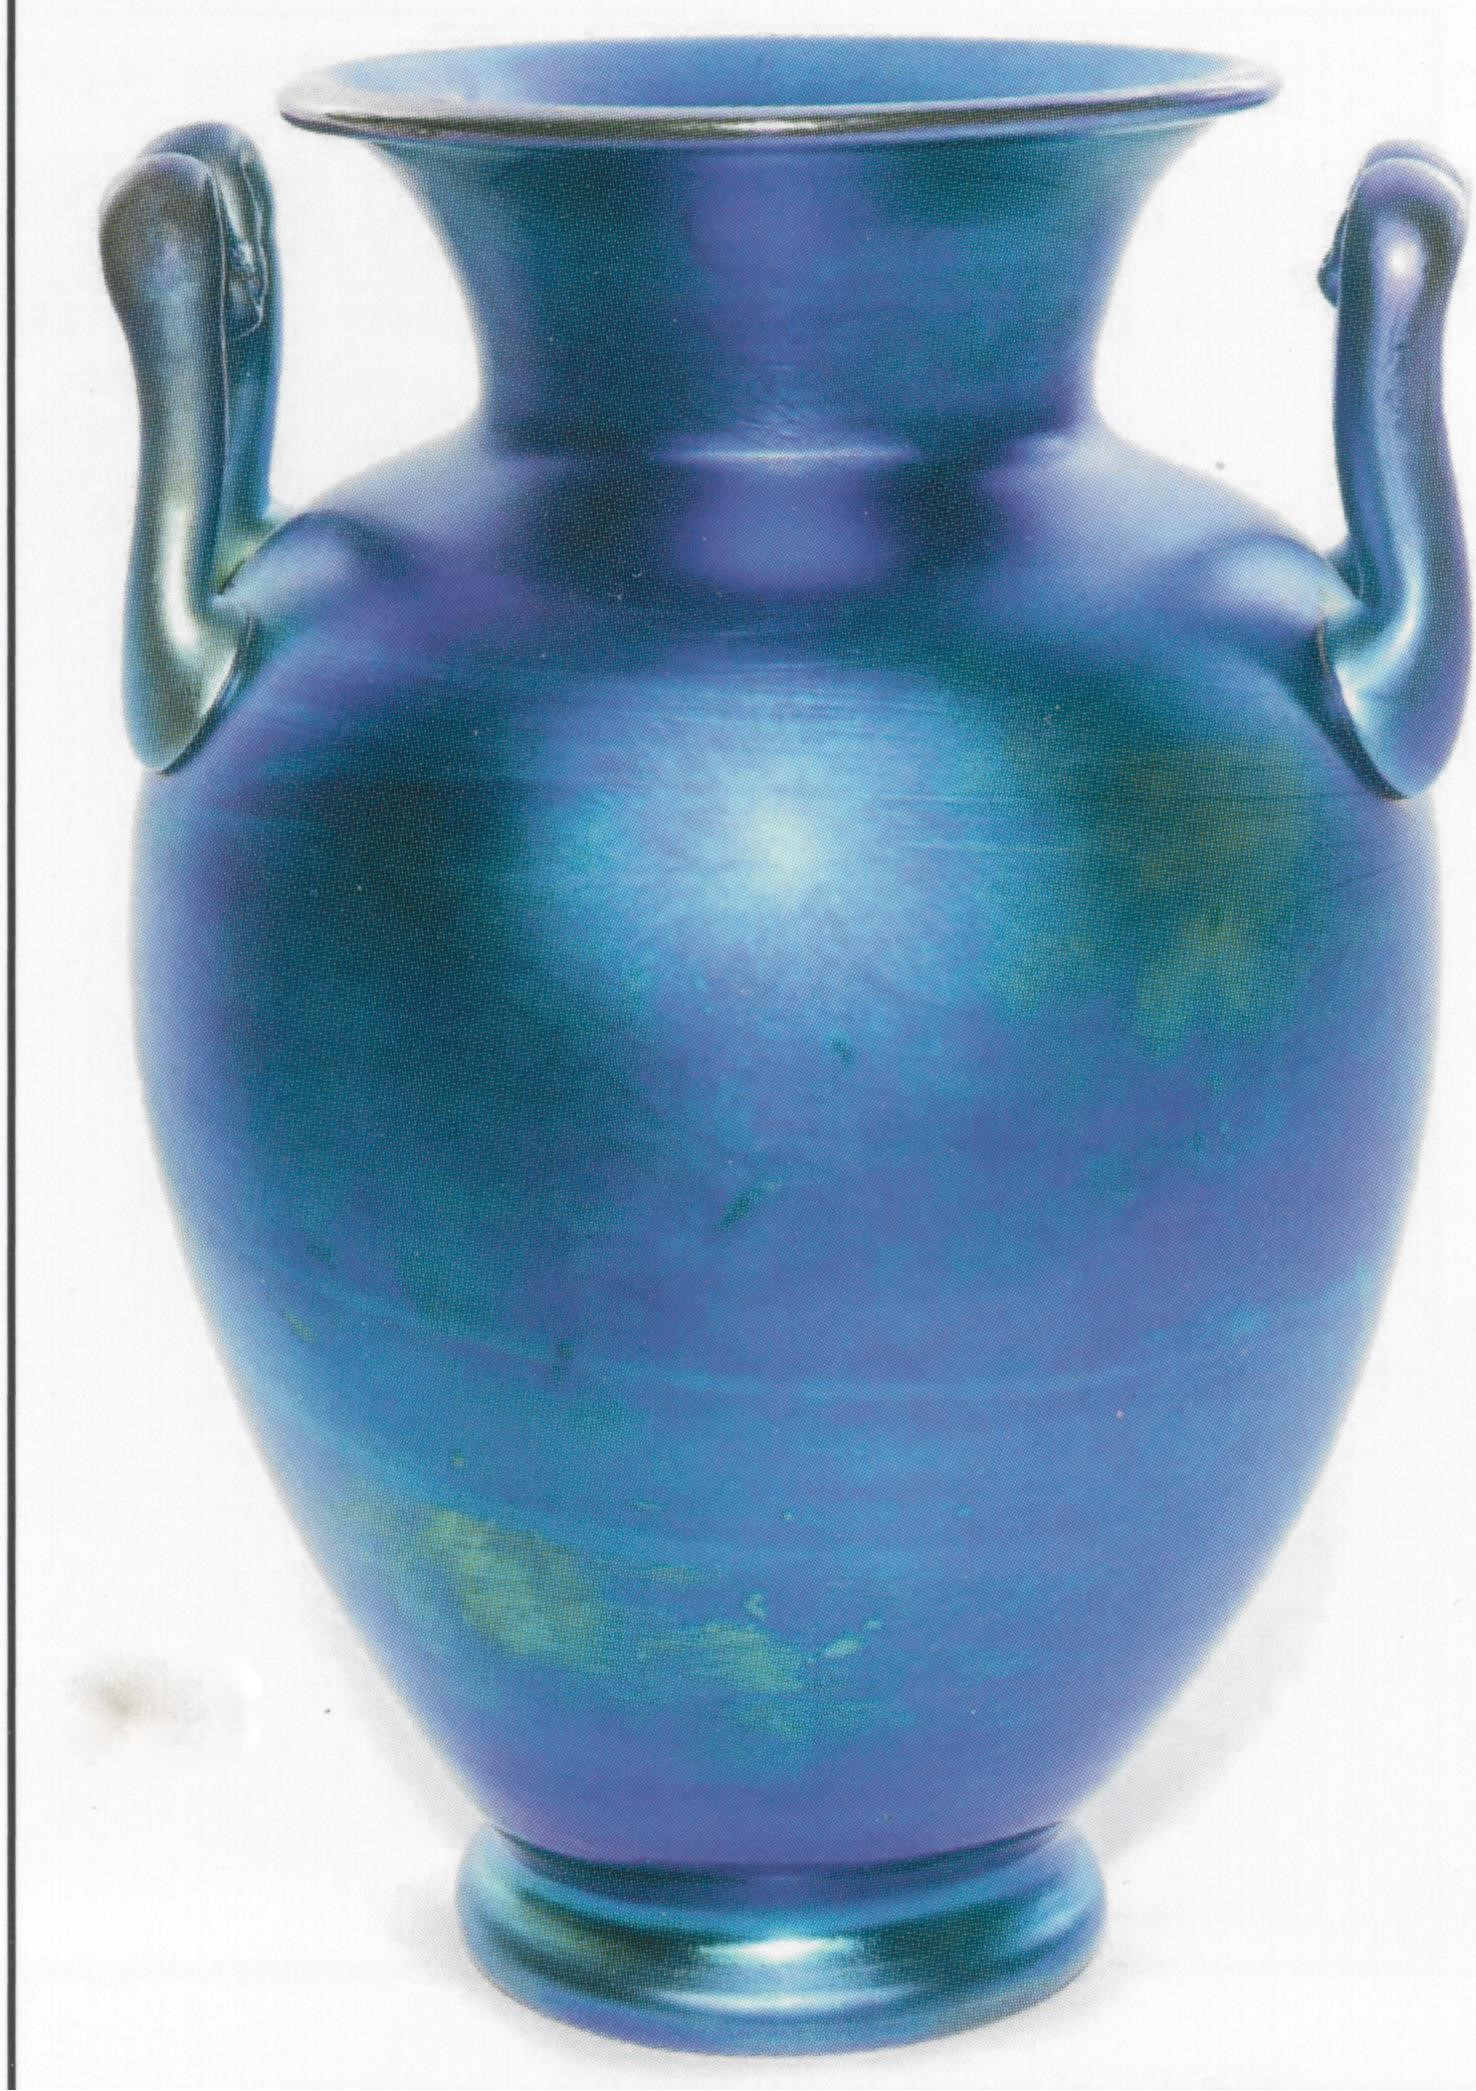 15 Stunning Steuben Vase Value 2024 free download steuben vase value of carder steuben club shape index results intended for carder steuben vase 8508